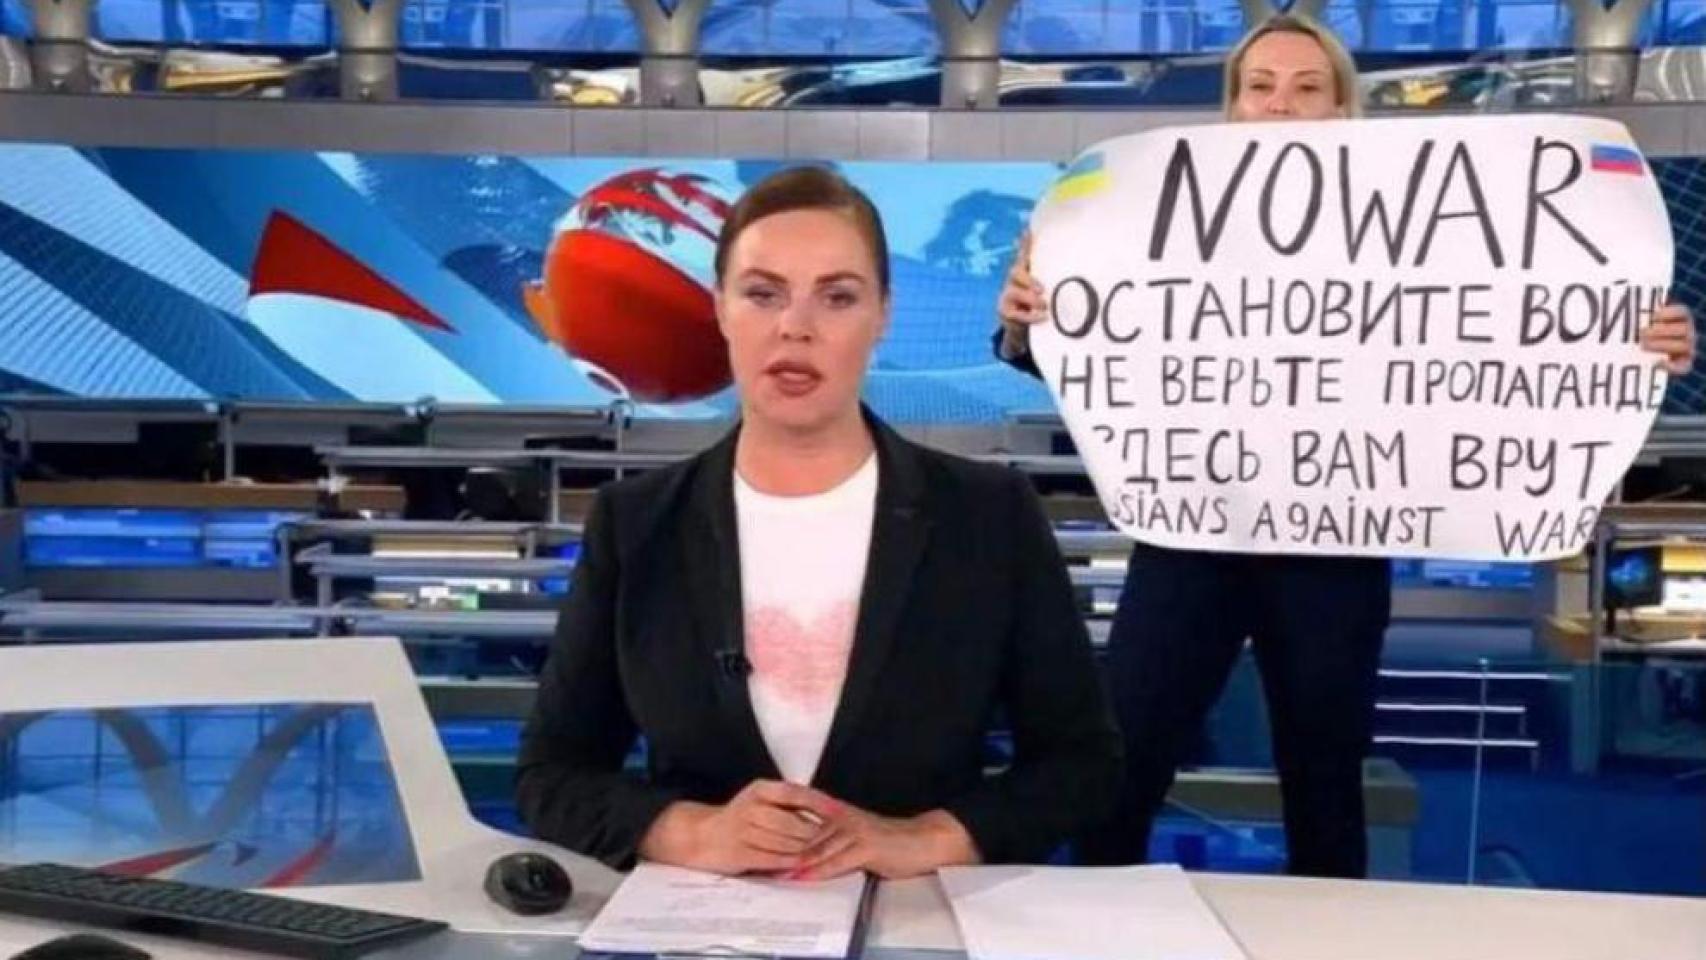 Marina Ovsiannikova, en la televisión estatal rusa con un cartel contra la guerra en Ucrania.